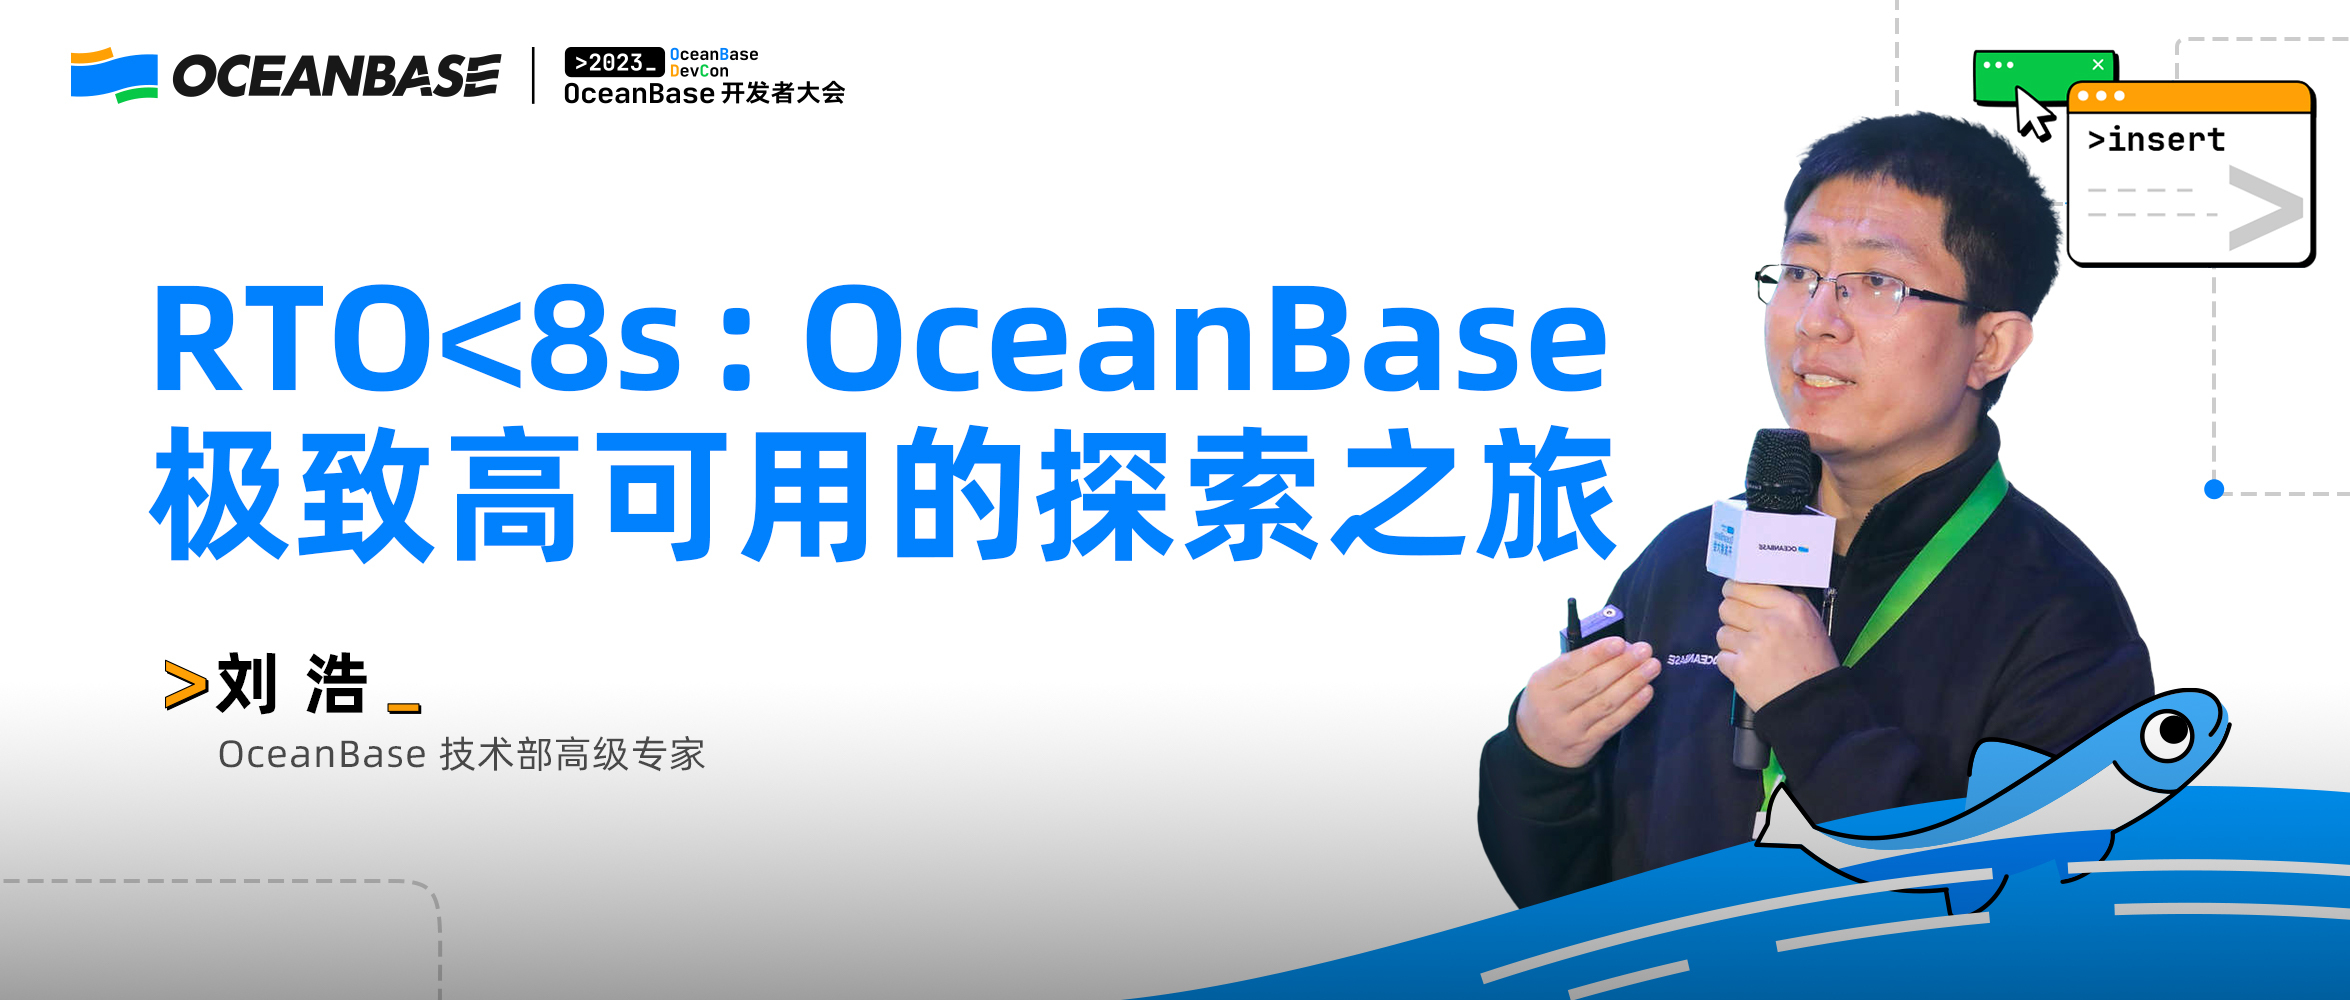 刘浩：当谈到RTO < 8s时，OceanBase究竟在说什么？